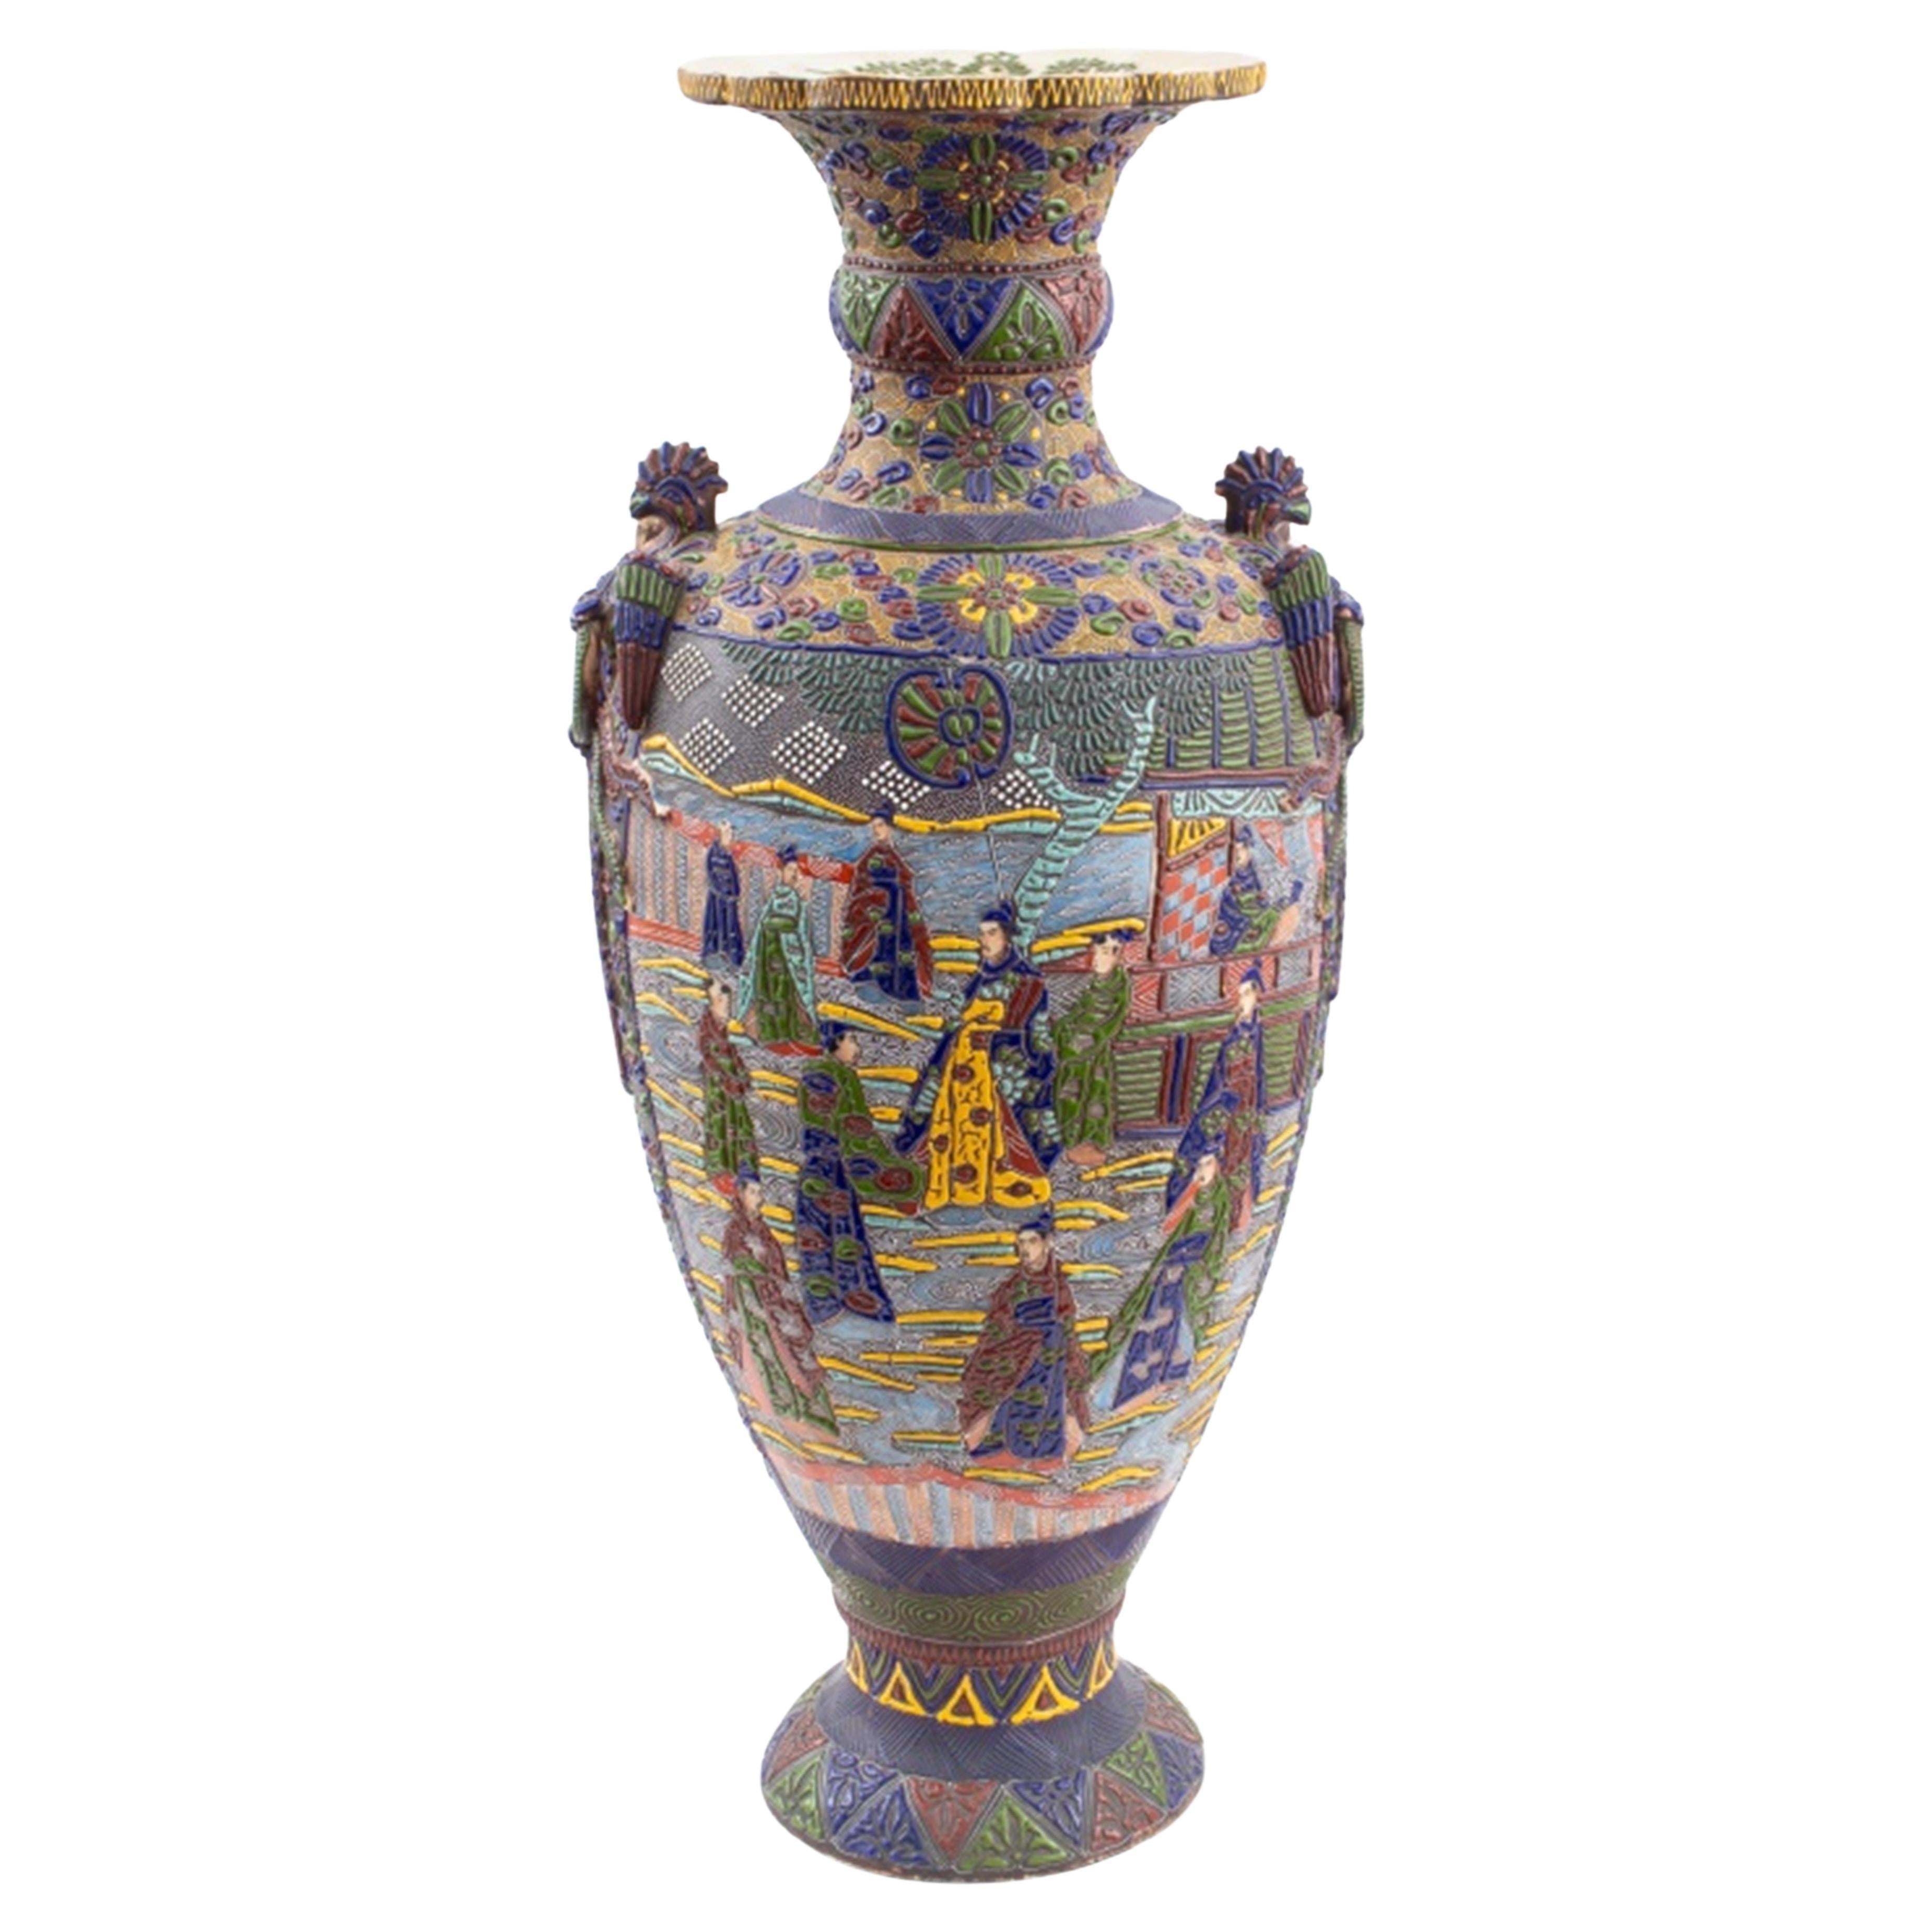 Japanese Monumental Satsuma Moriage Enamel Vase